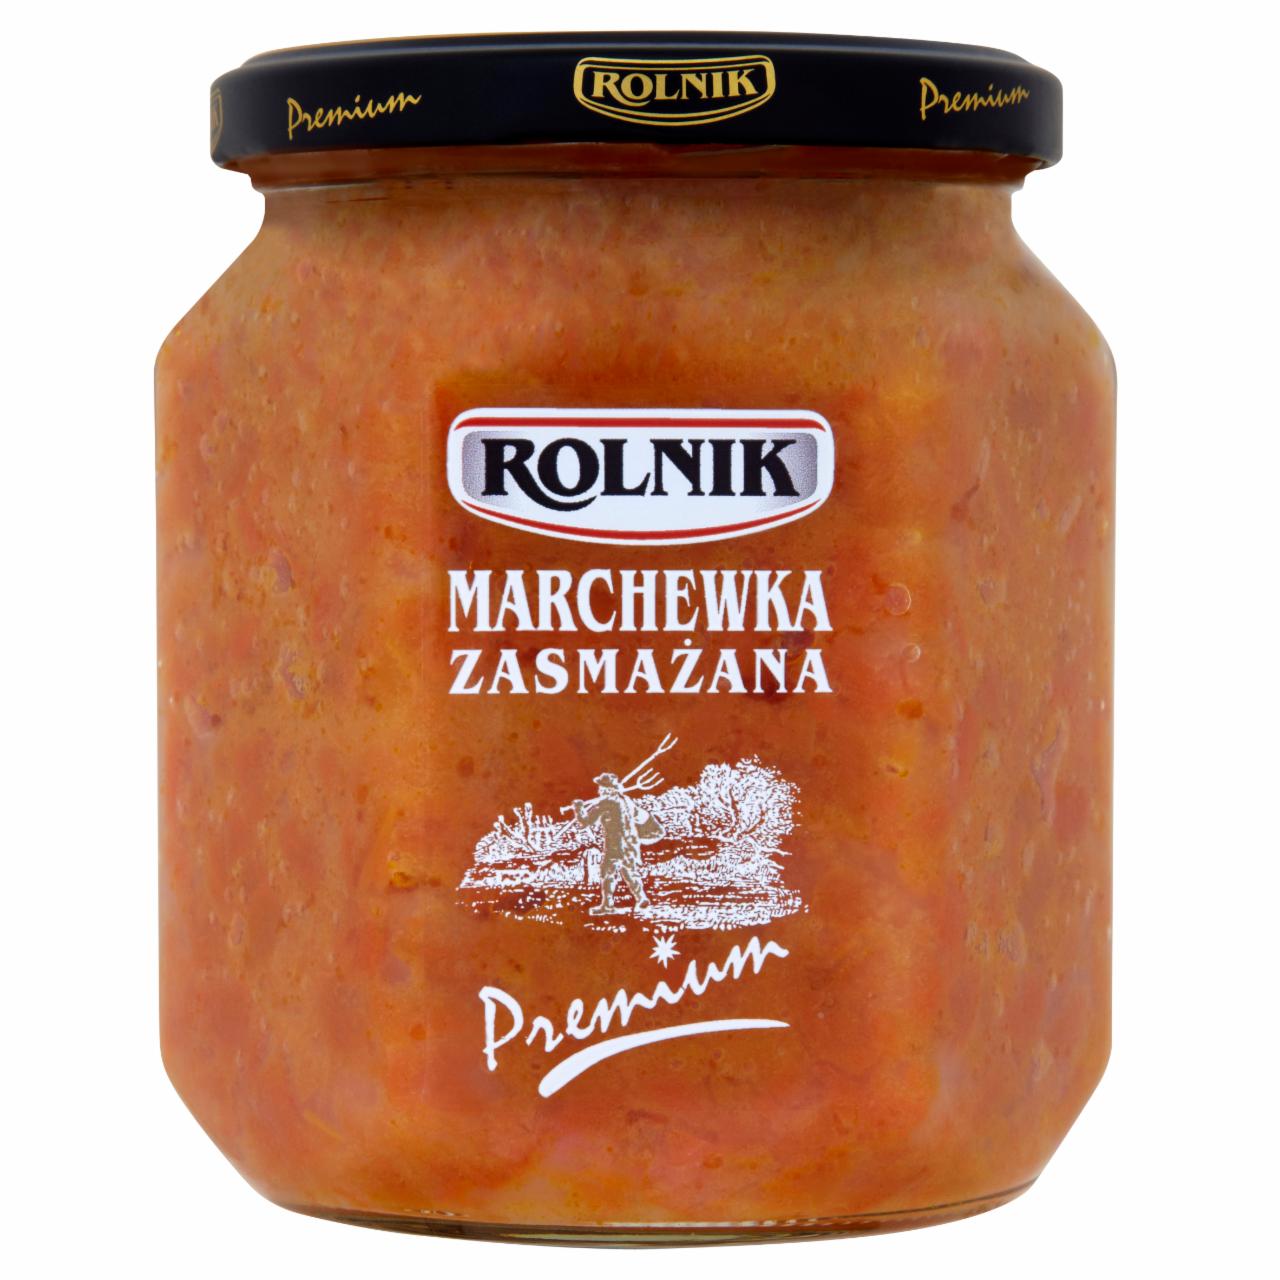 Zdjęcia - Rolnik Premium Marchewka zasmażana 520 g